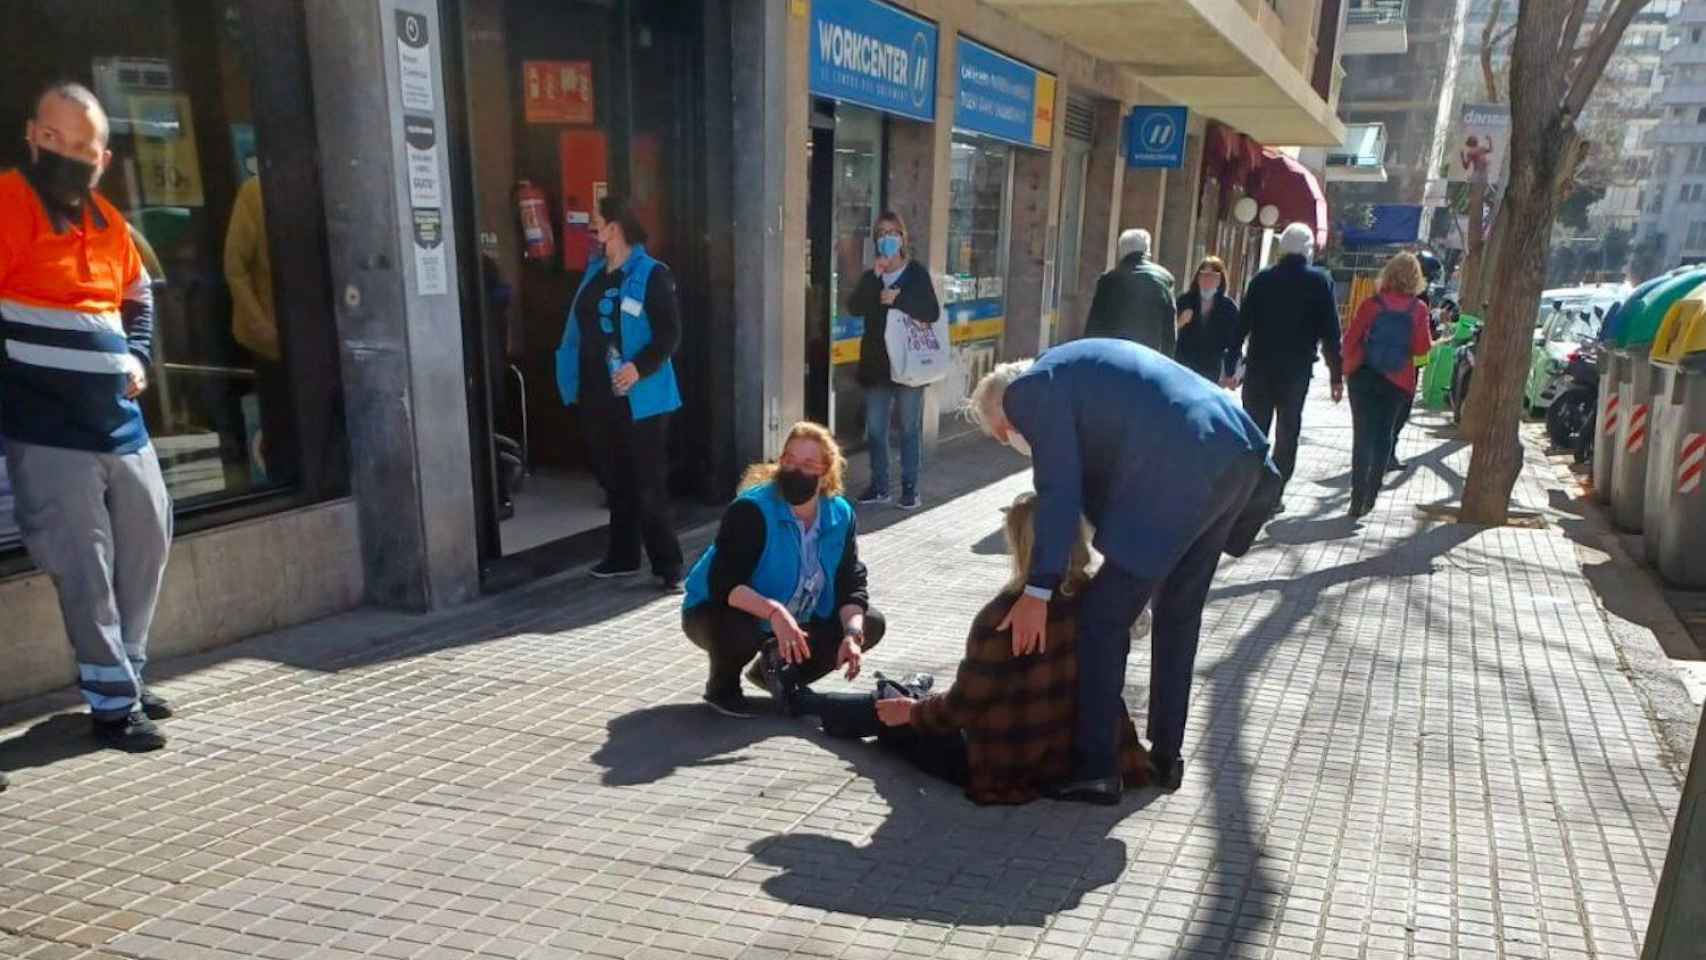 La víctima del violento robo en la calle Ganduxer, tendida en el suelo tras el asalto / ISAAC MARÍN - TWITTER